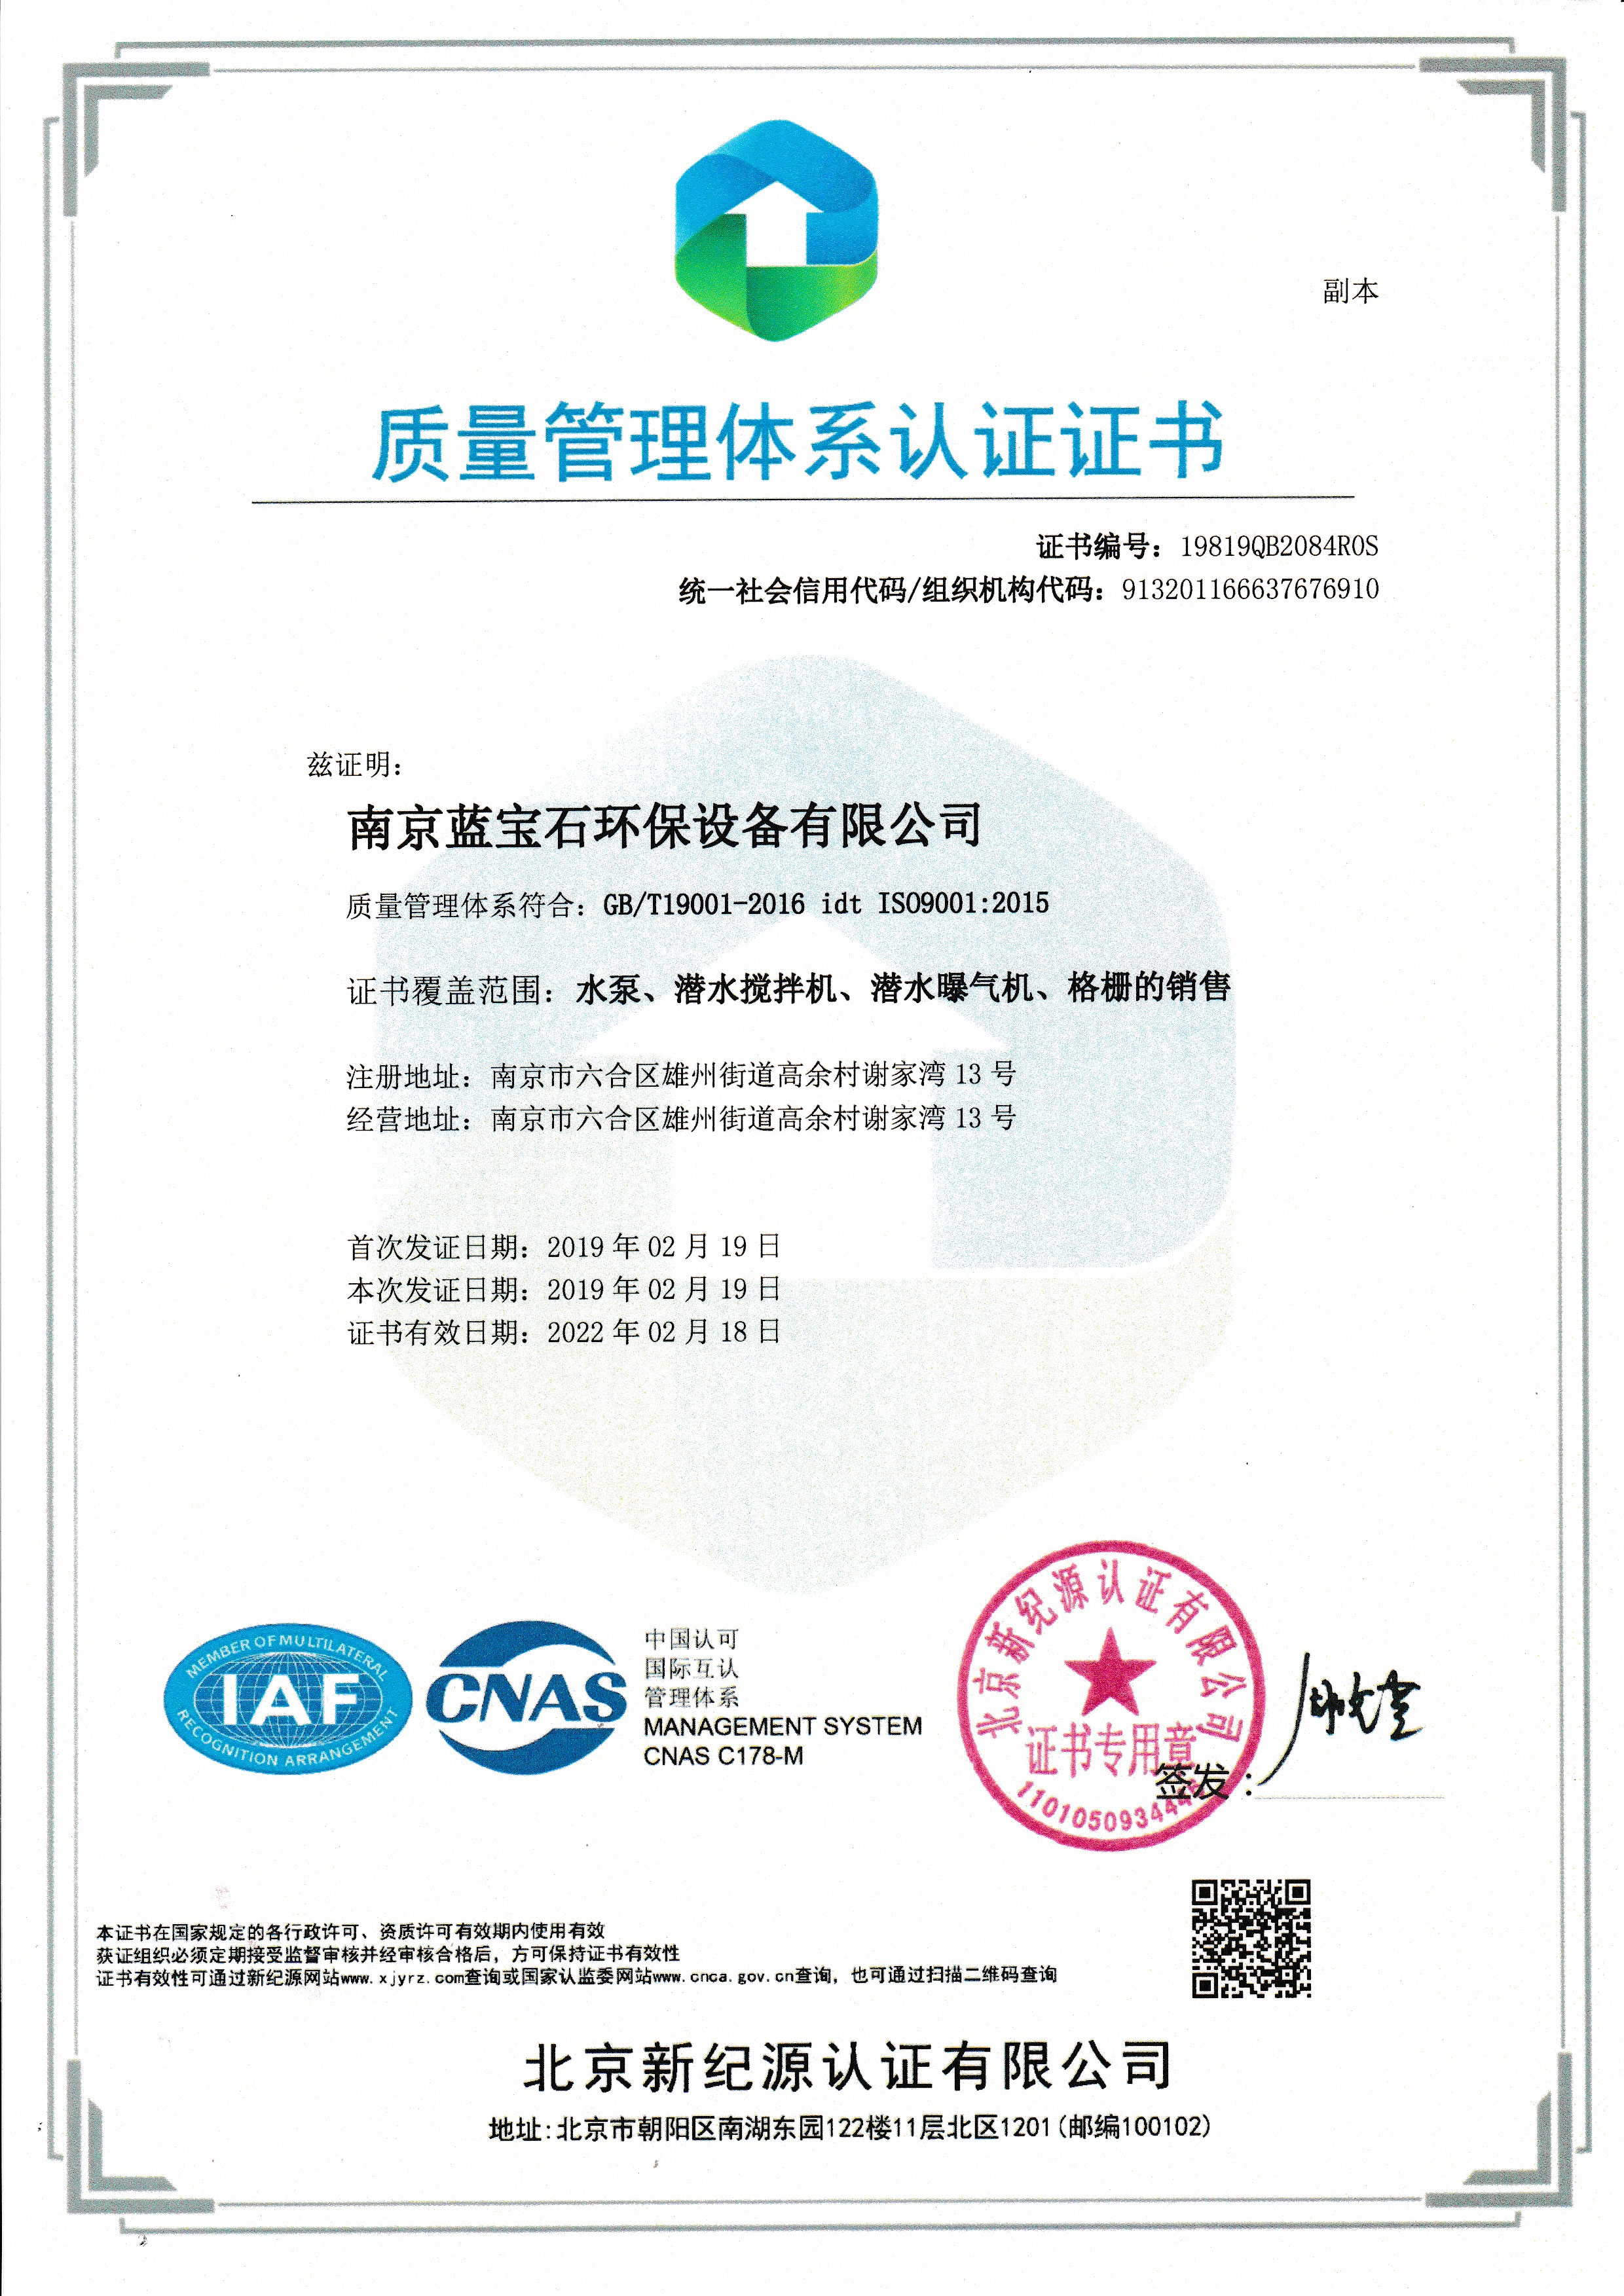 南京蓝宝石环保设备有限公司通过ISO9001质量体系认证